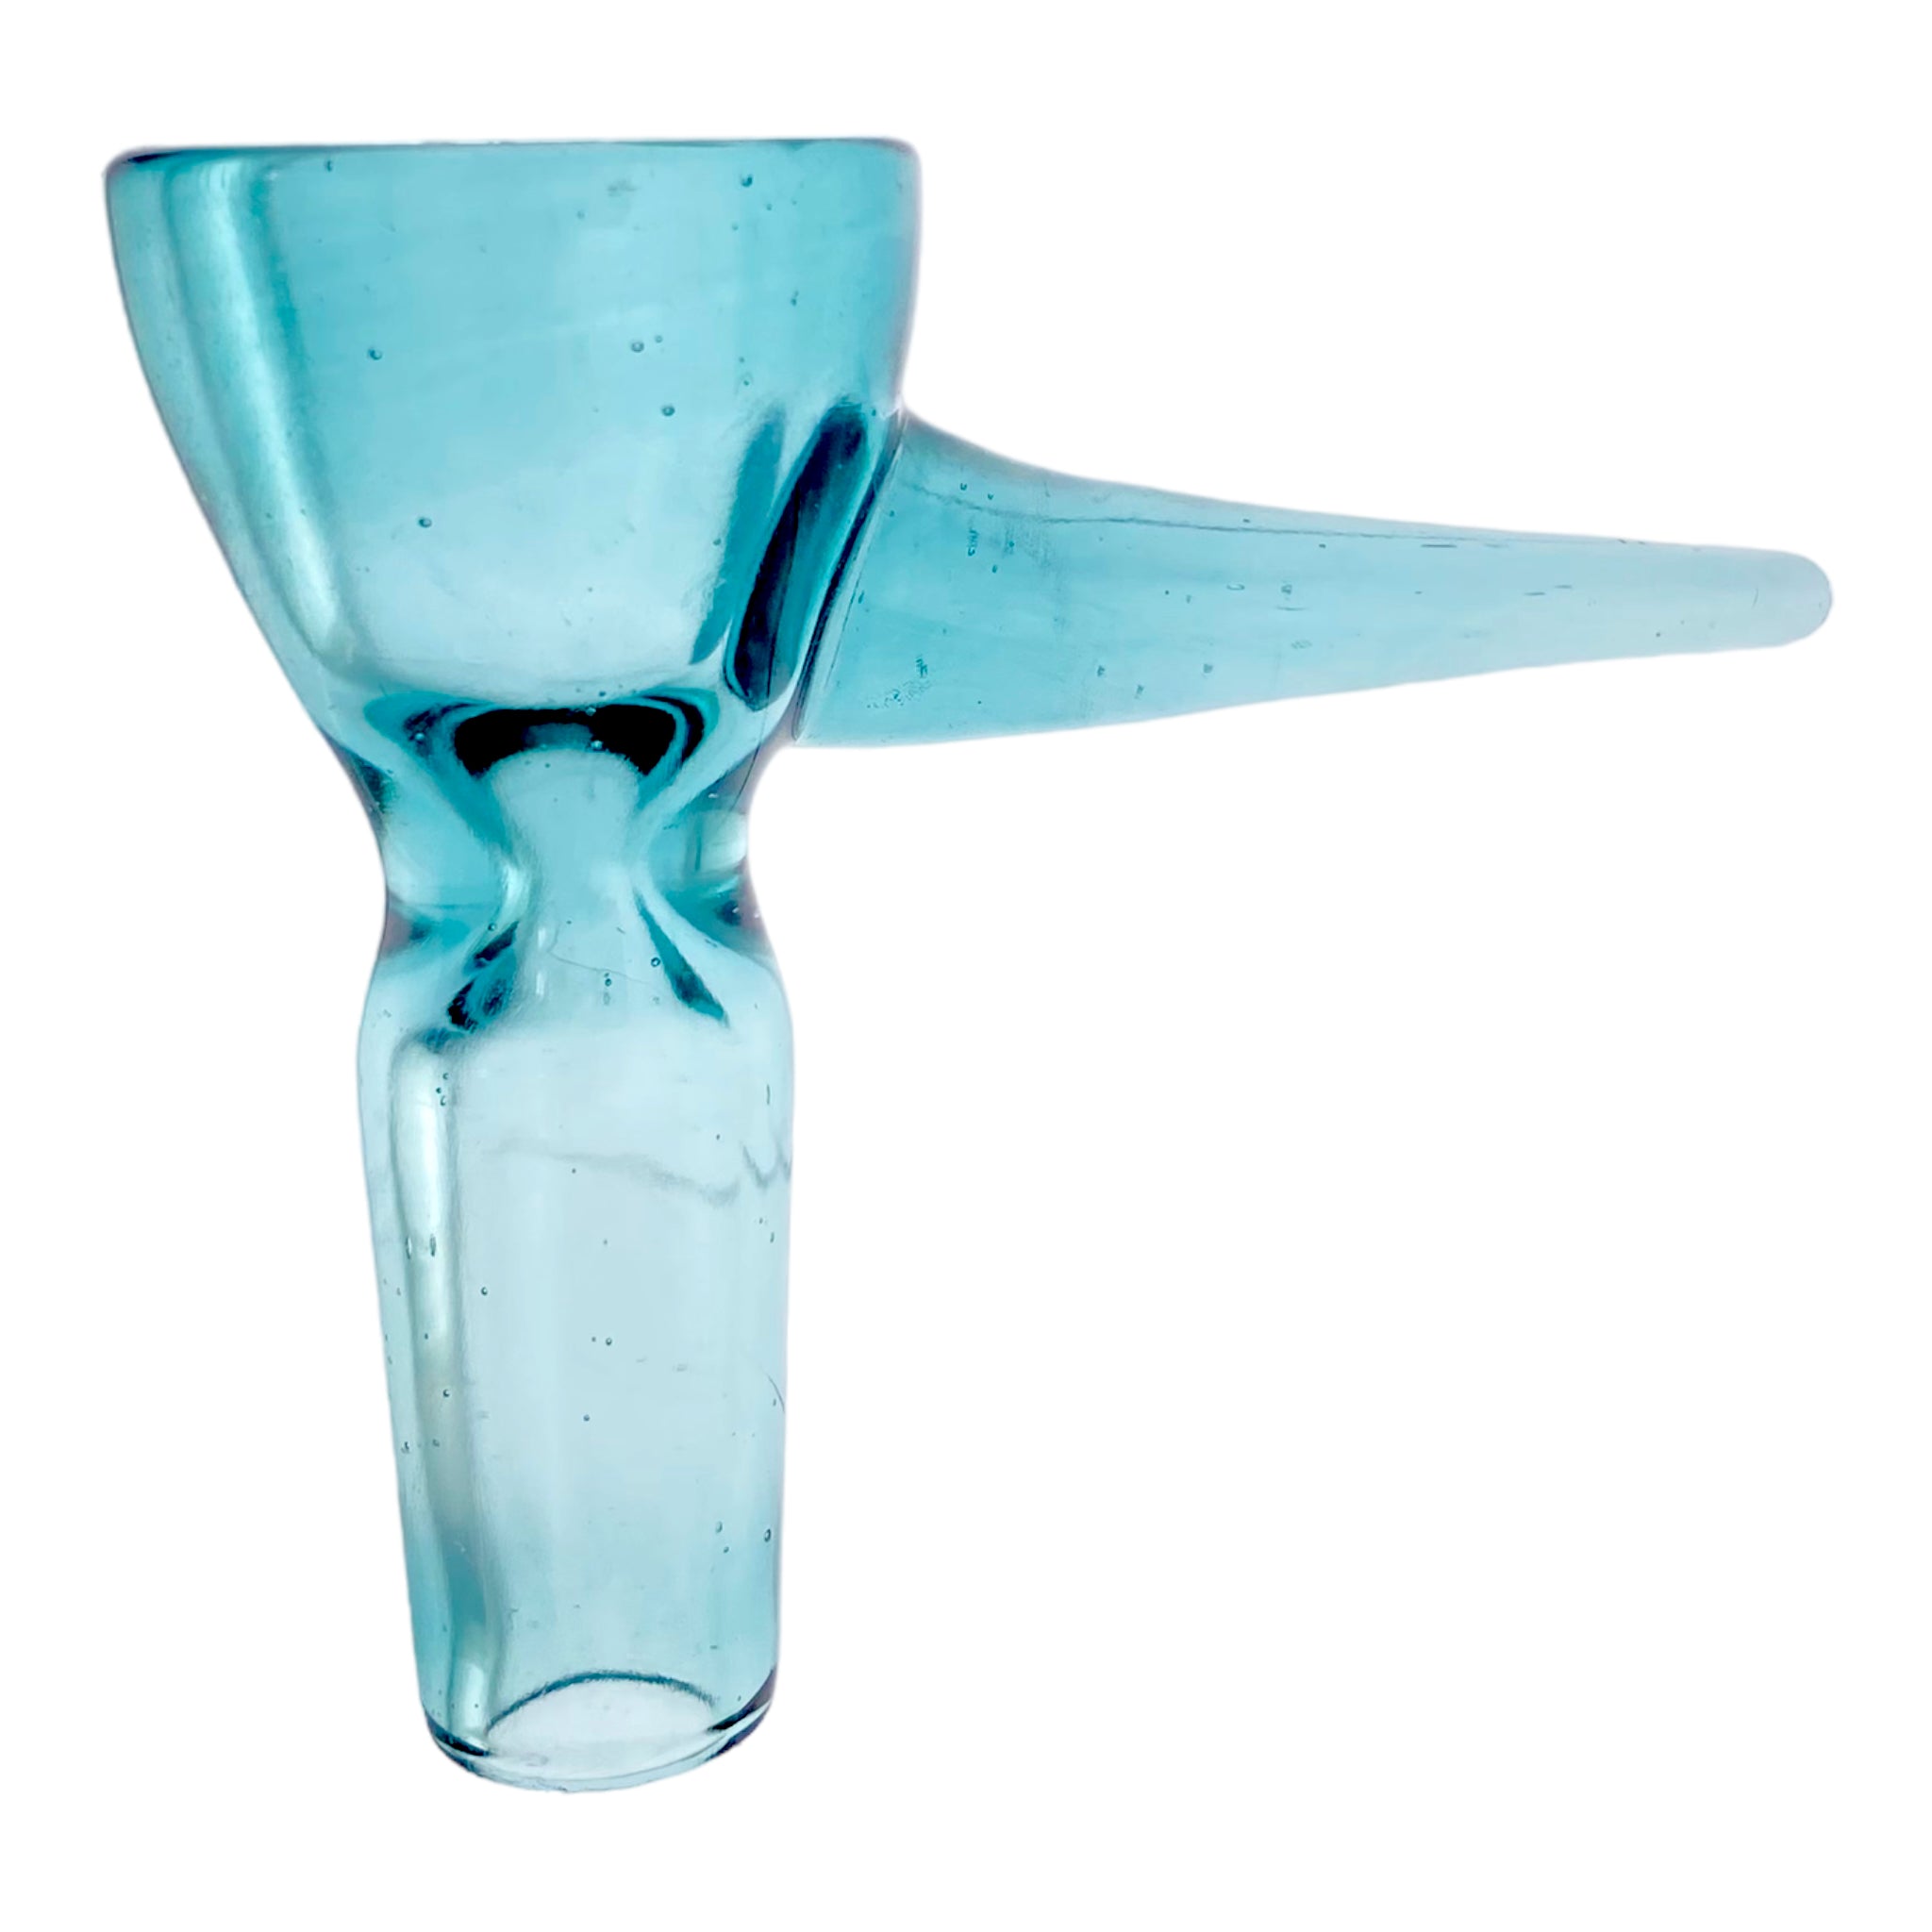 Optera Glass - Aqua Blue With Aqua Blue Handle Full Color - 14mm Bowl Piece